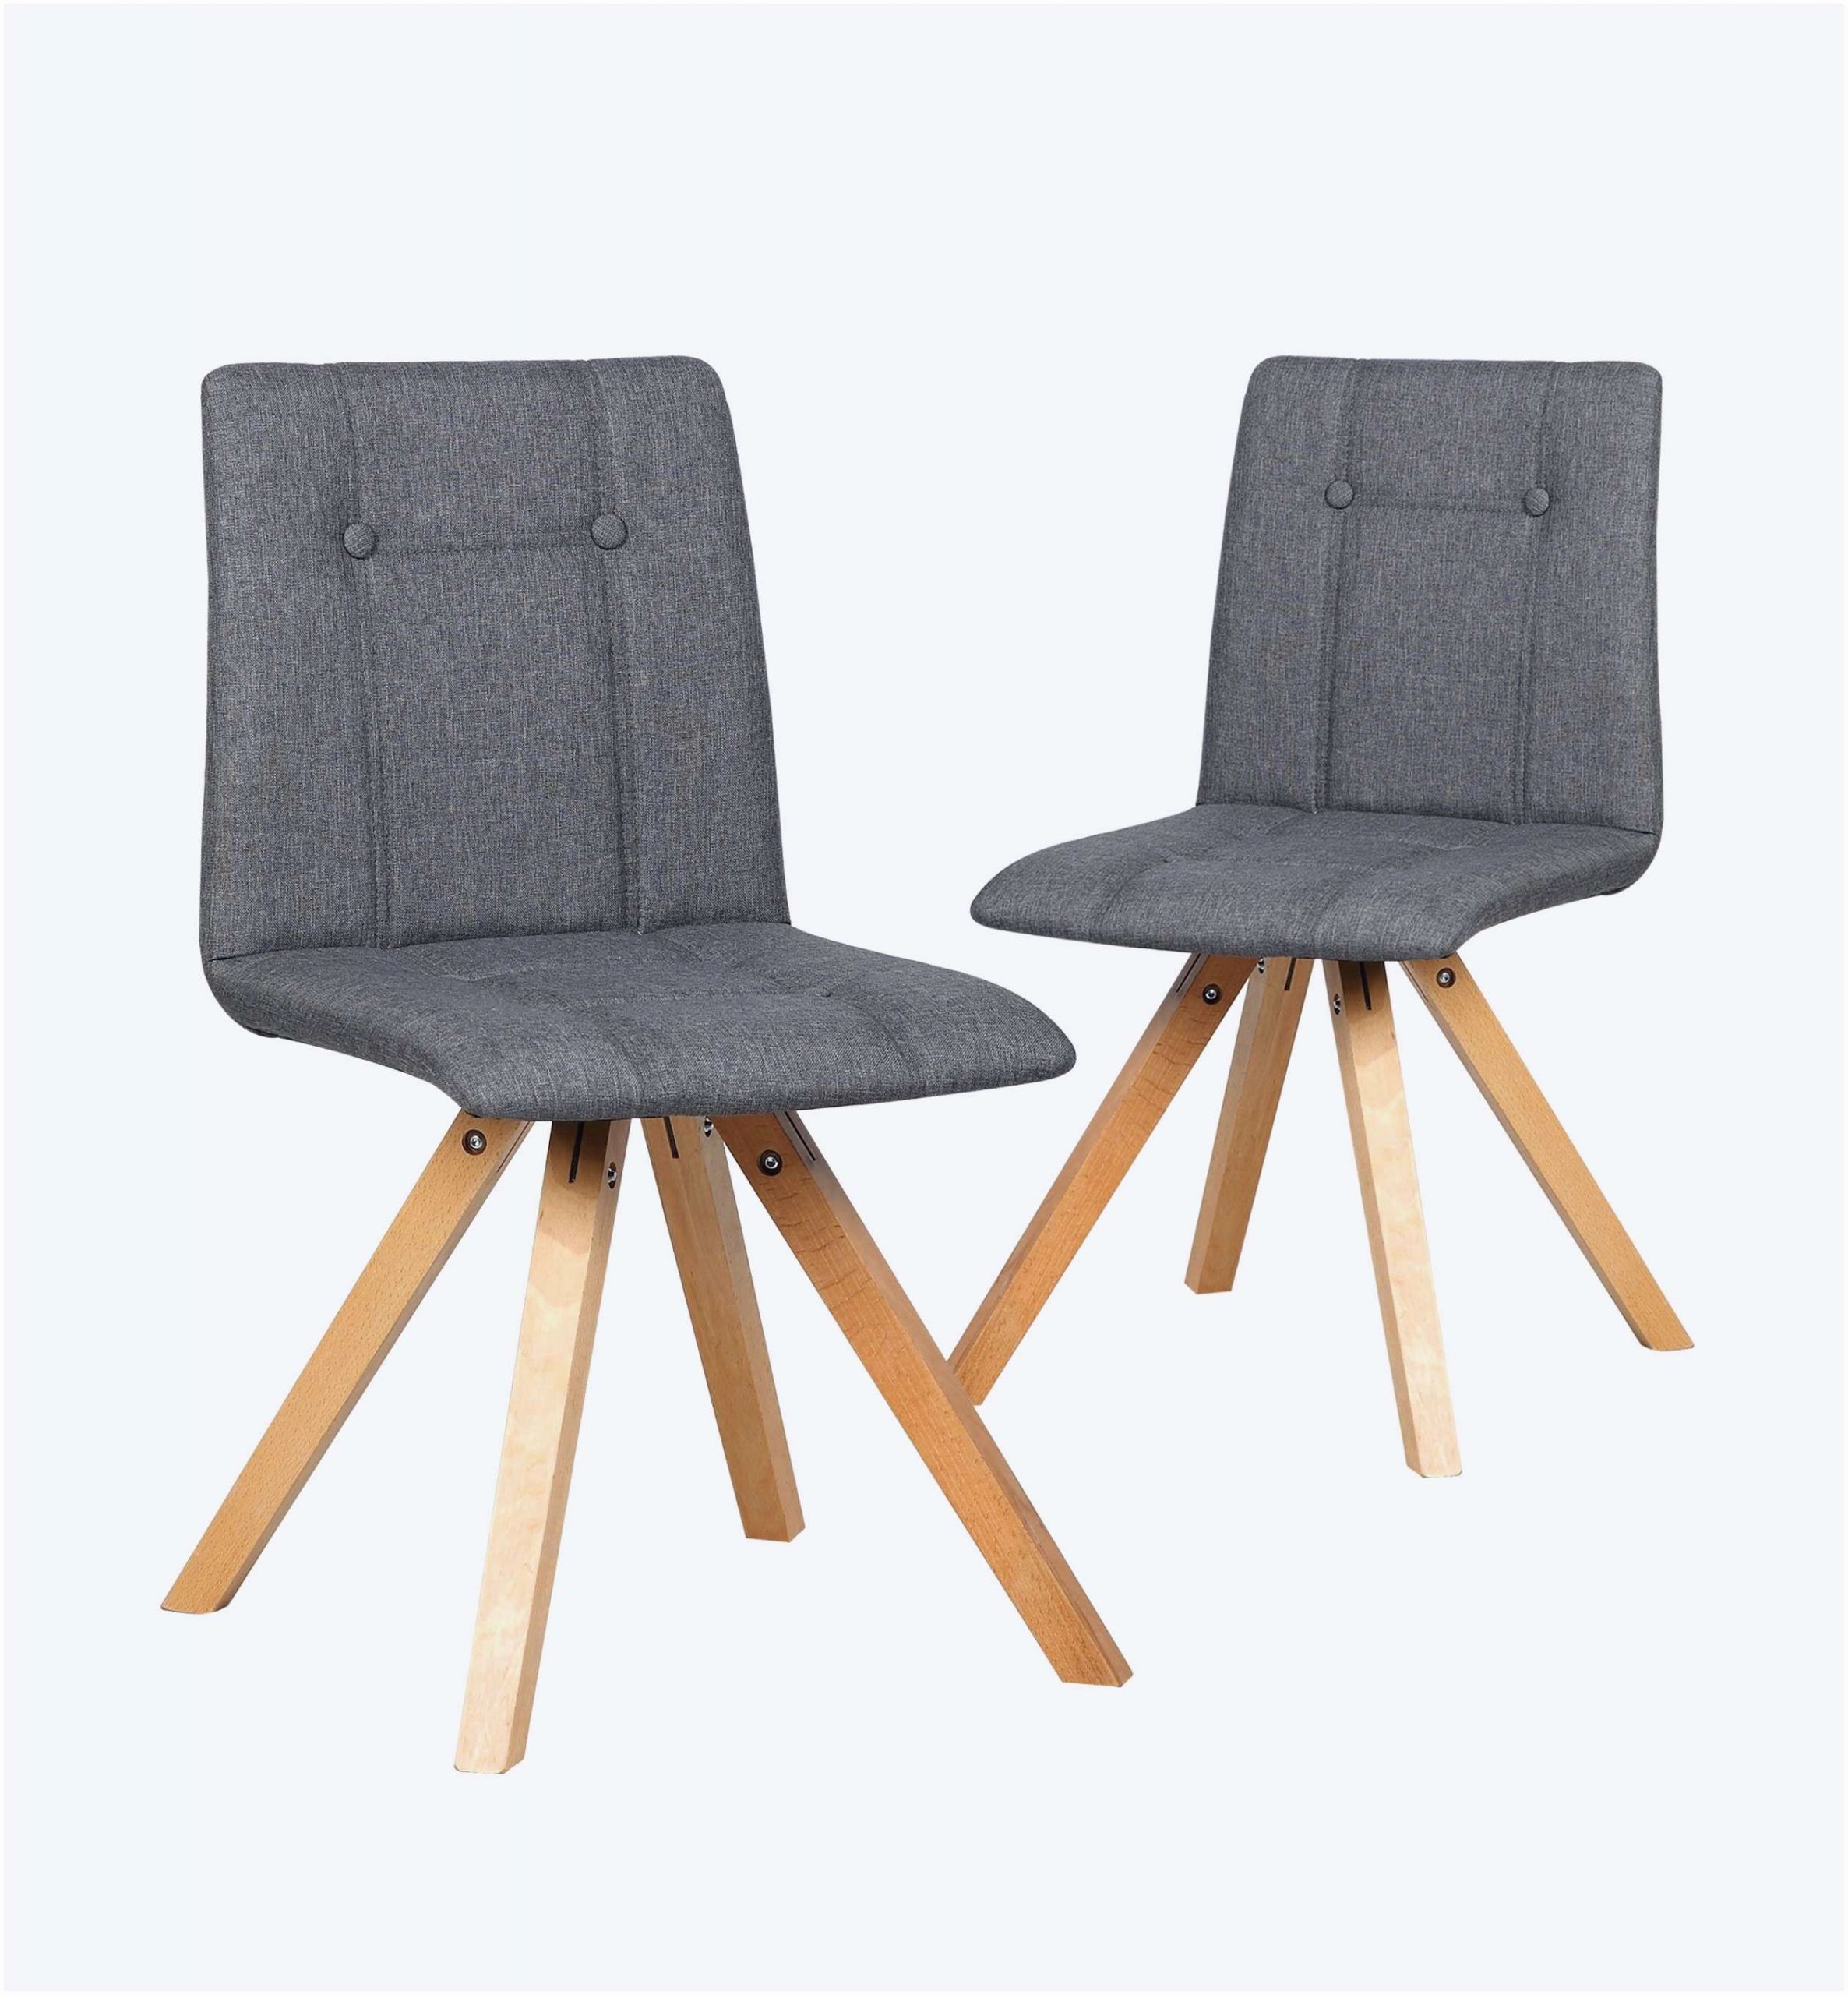 chaise plan de travail scandinave luxe elegant chaise metal pas cher best scandinave chaise chaise teck 0d of chaise plan de travail scandinave